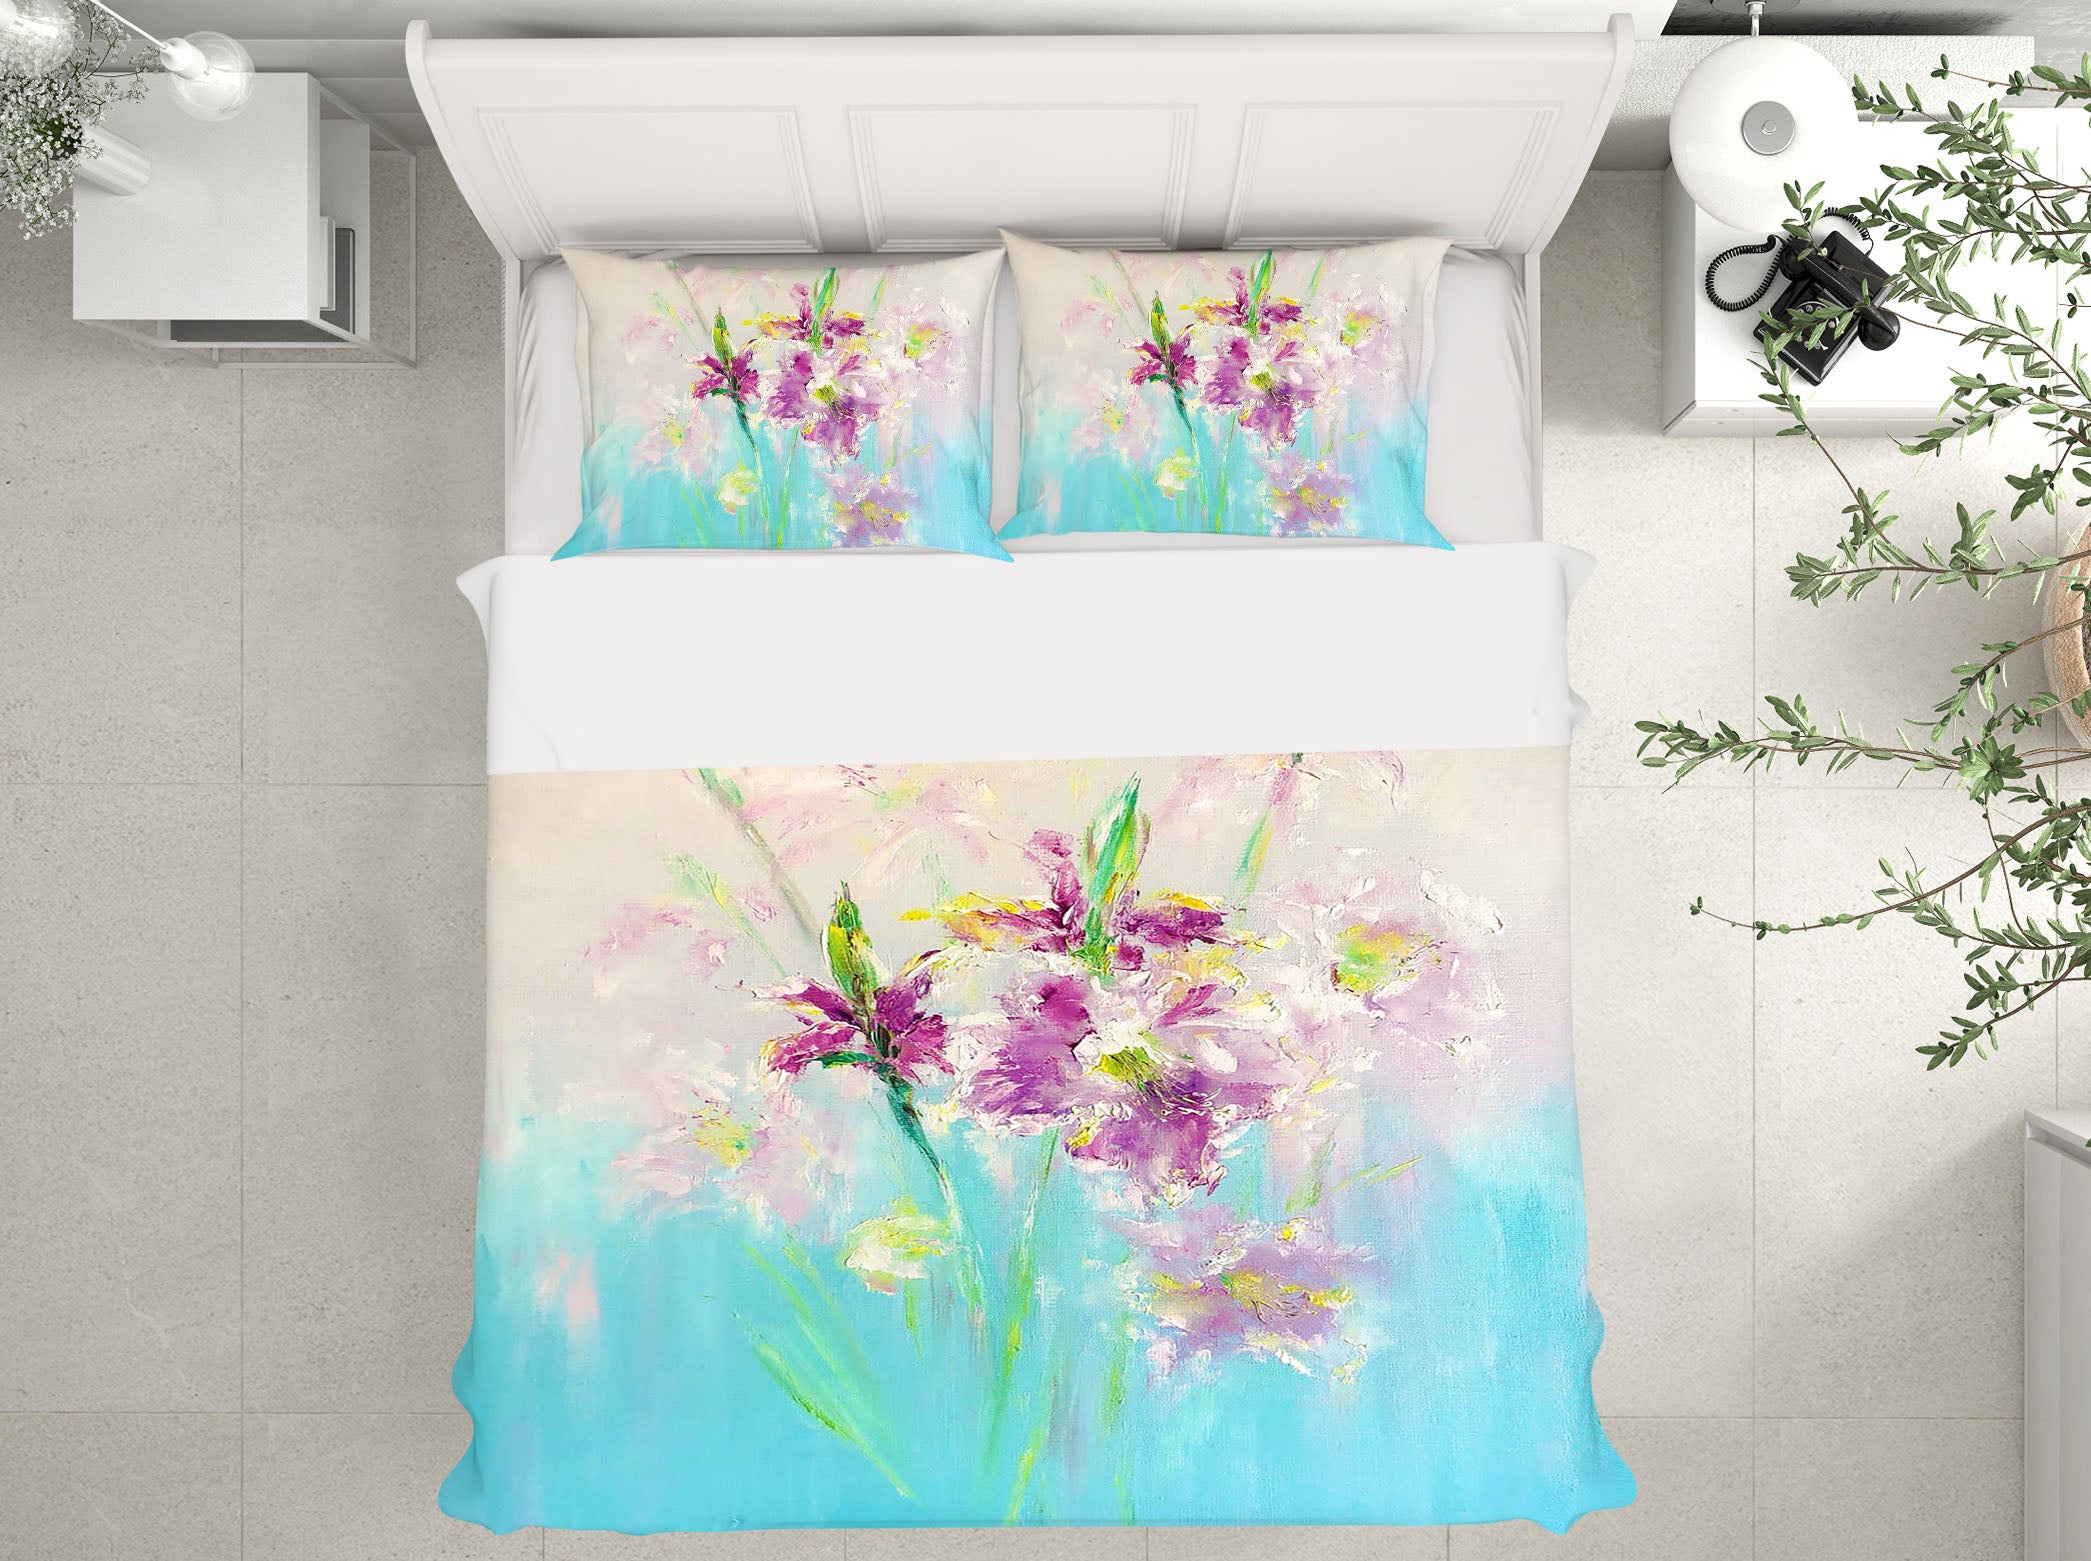 3D Purple Bouquet 550 Skromova Marina Bedding Bed Pillowcases Quilt